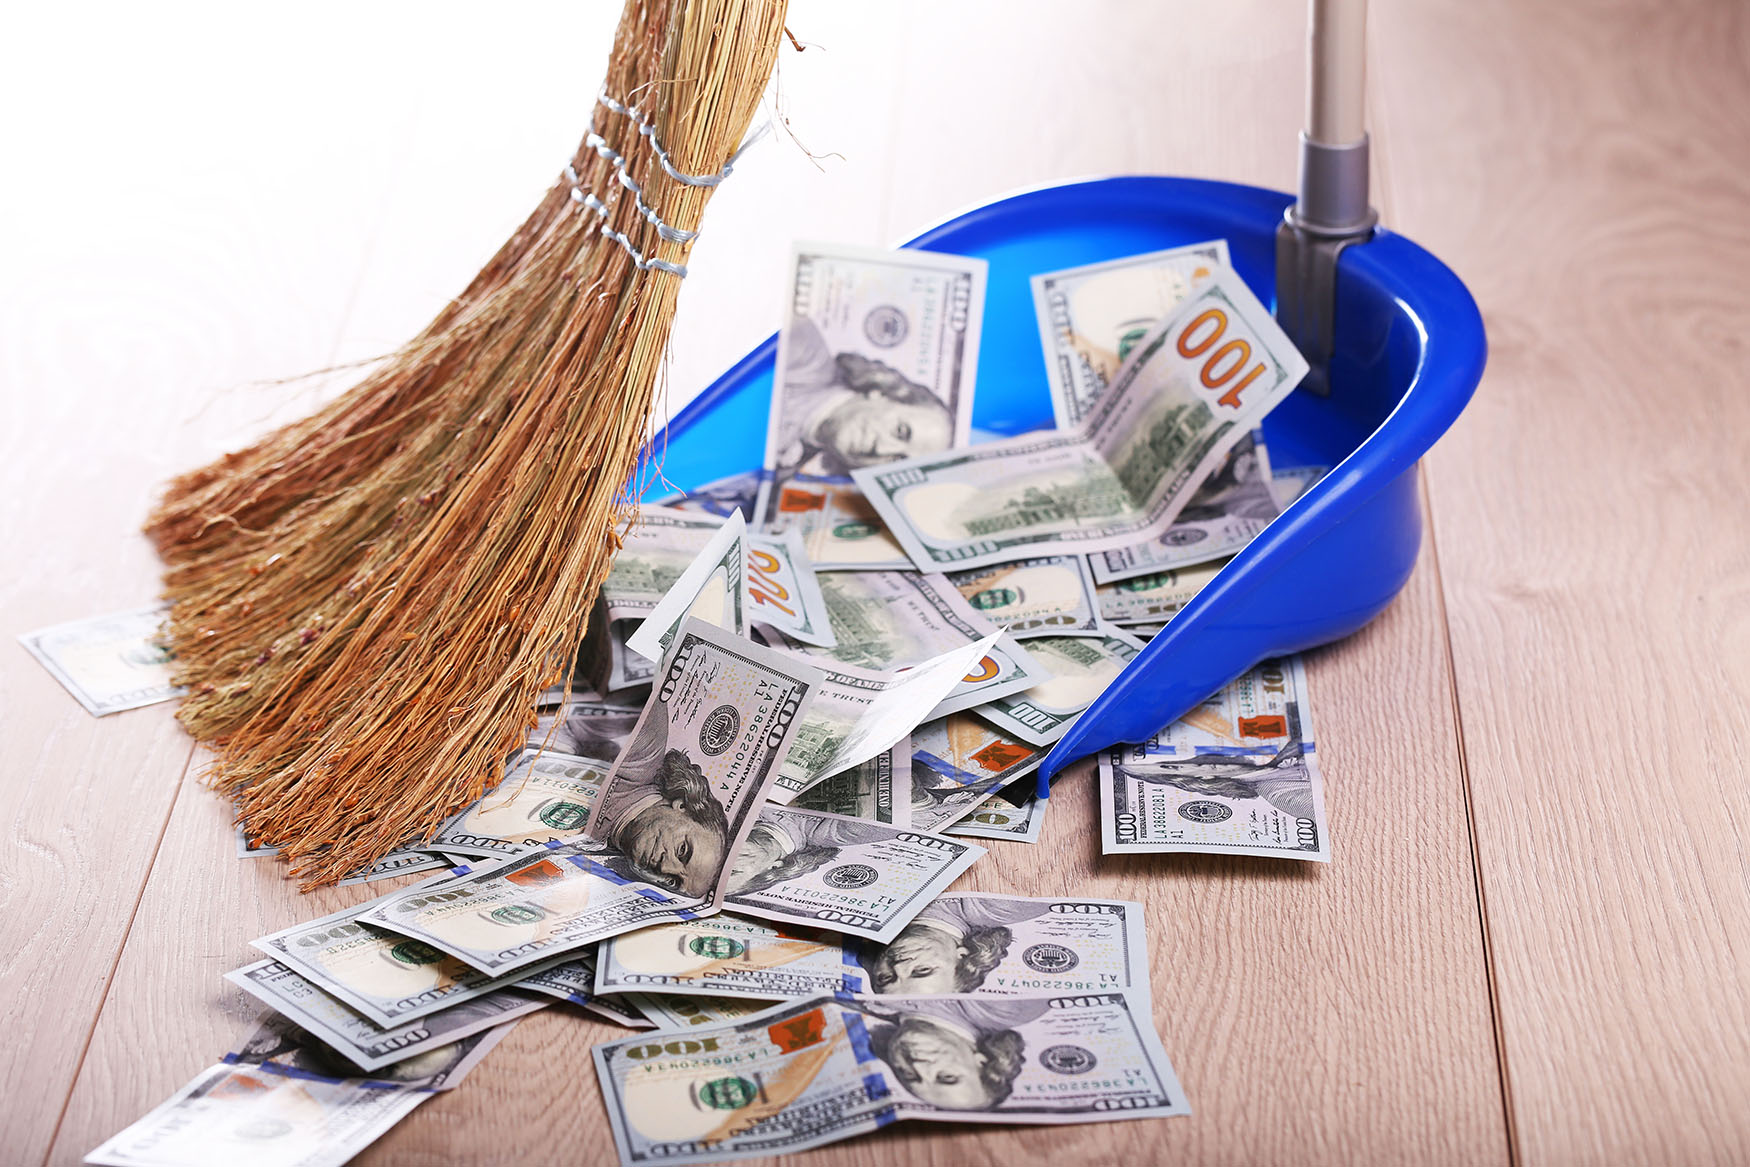 Broom sweeping up money